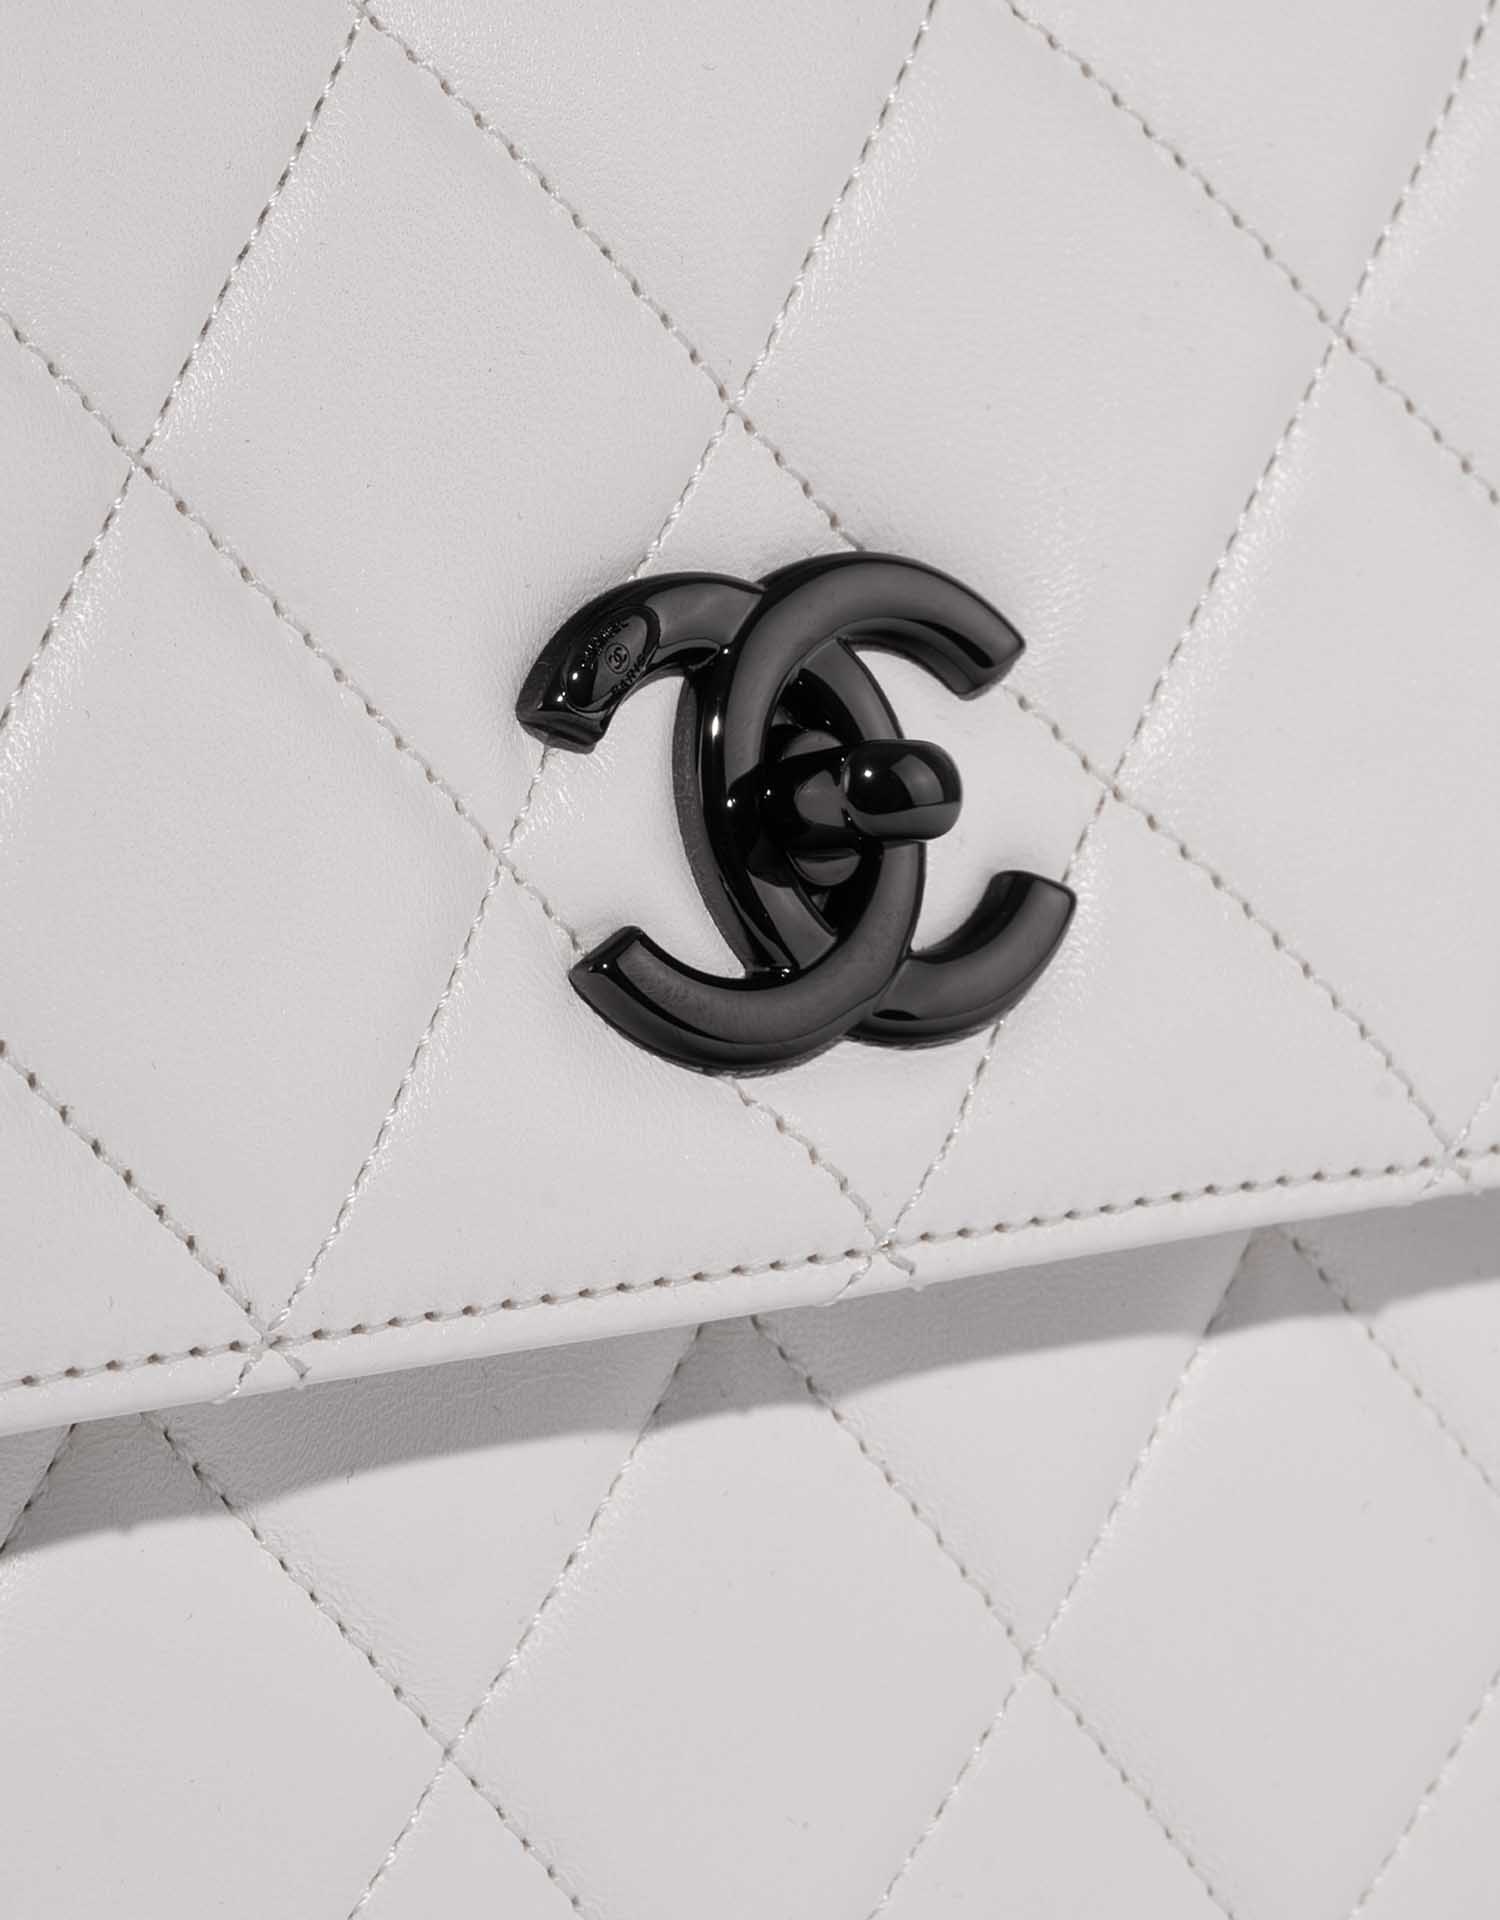 Chanel TimelessHandle Small White Closing System | Verkaufen Sie Ihre Designer-Tasche auf Saclab.com